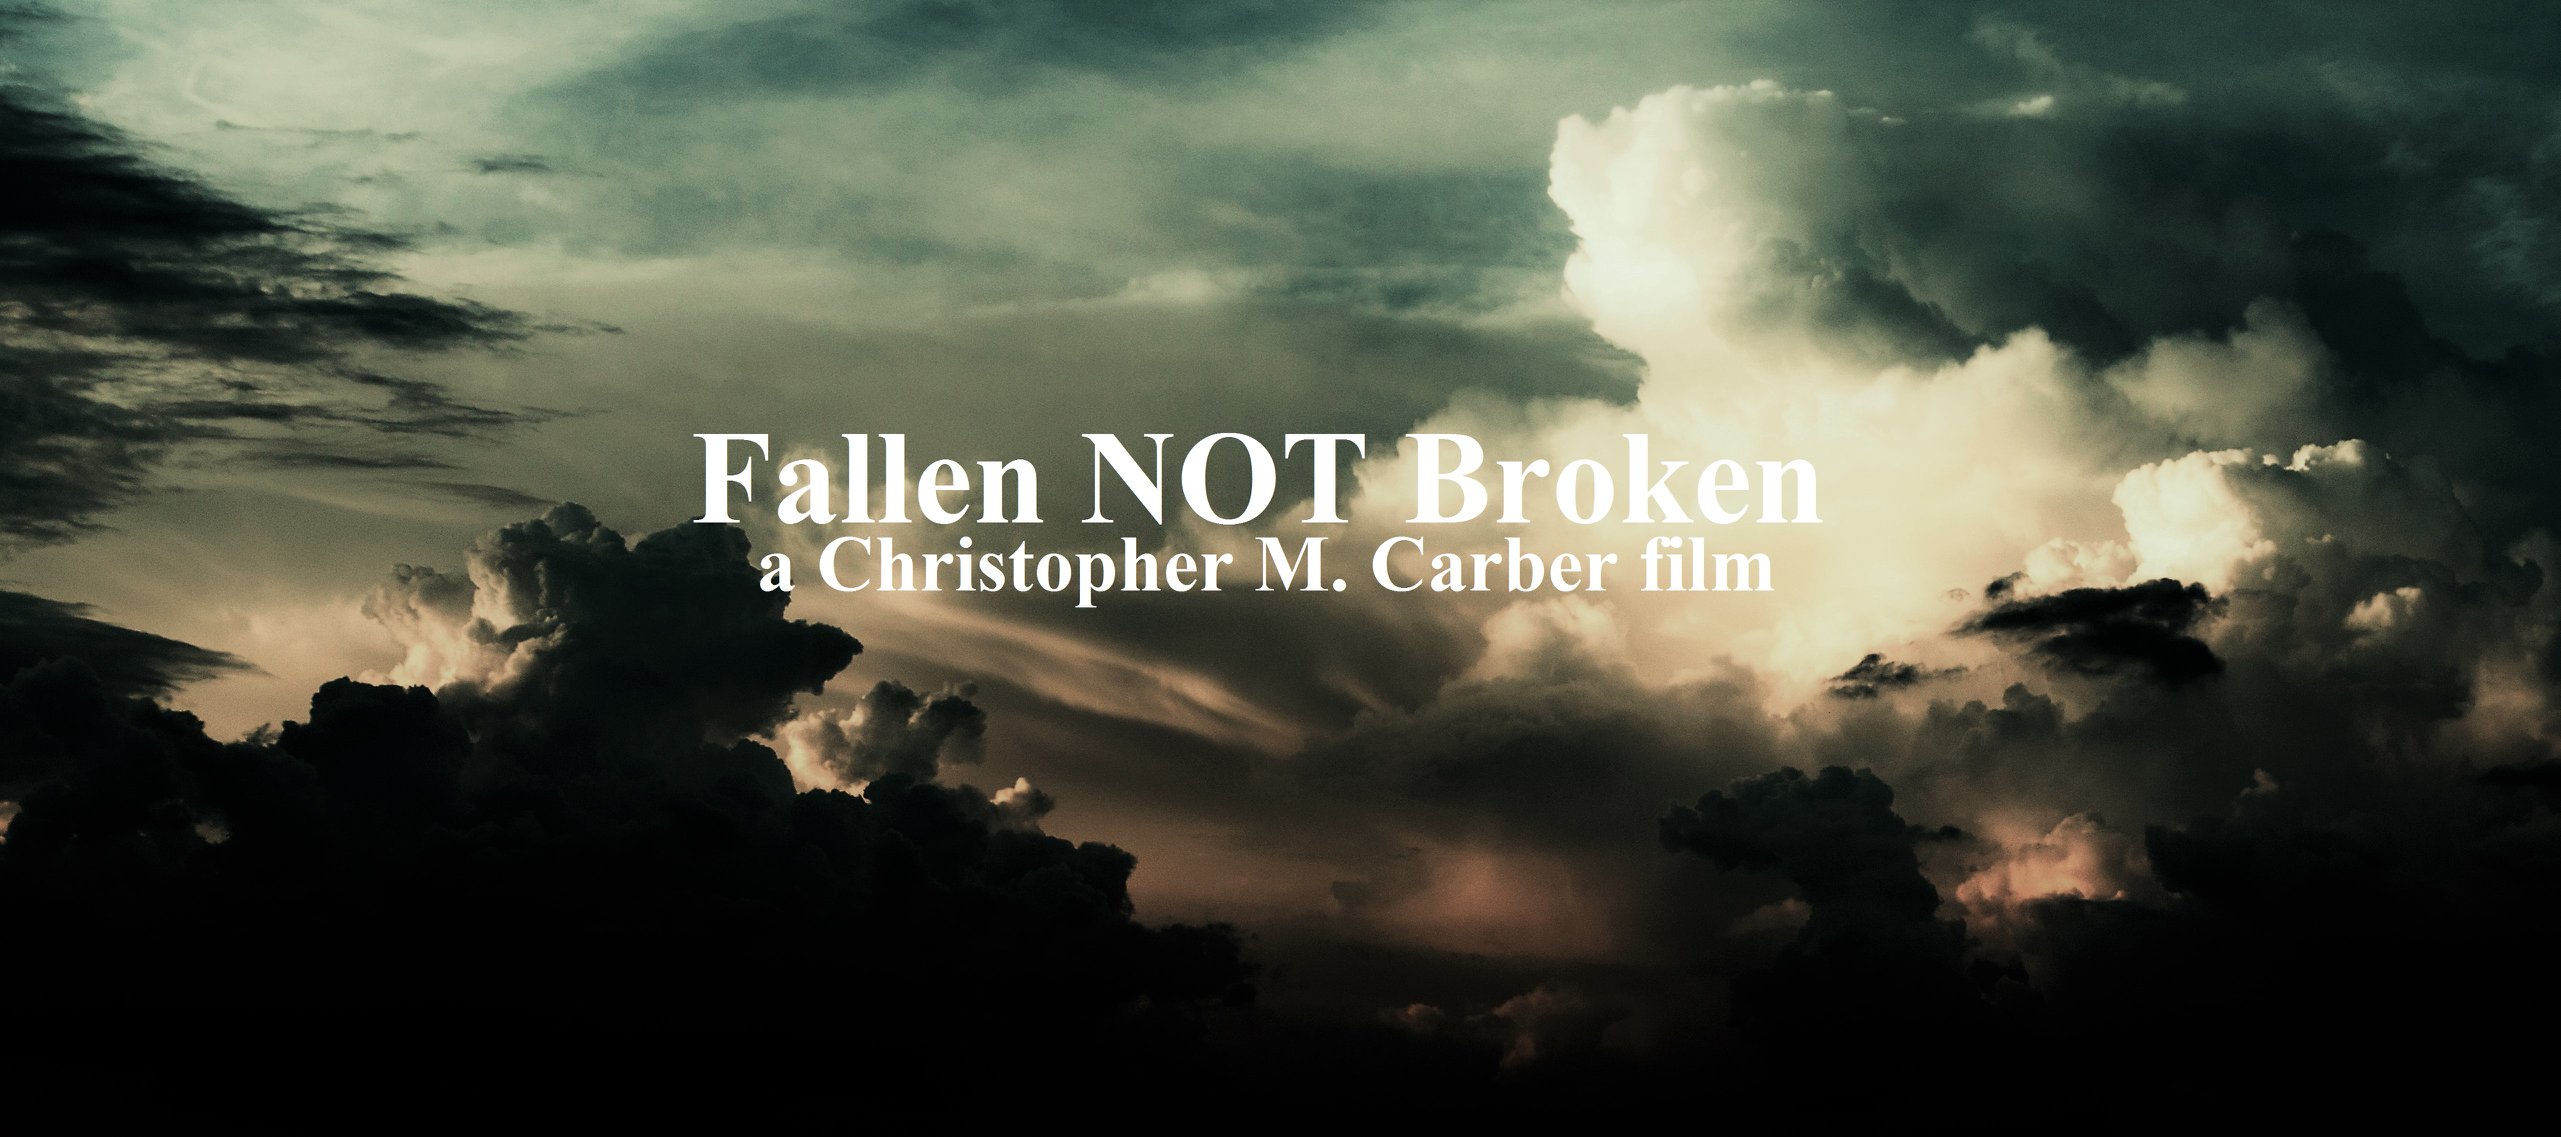 Fallen NOT Broken